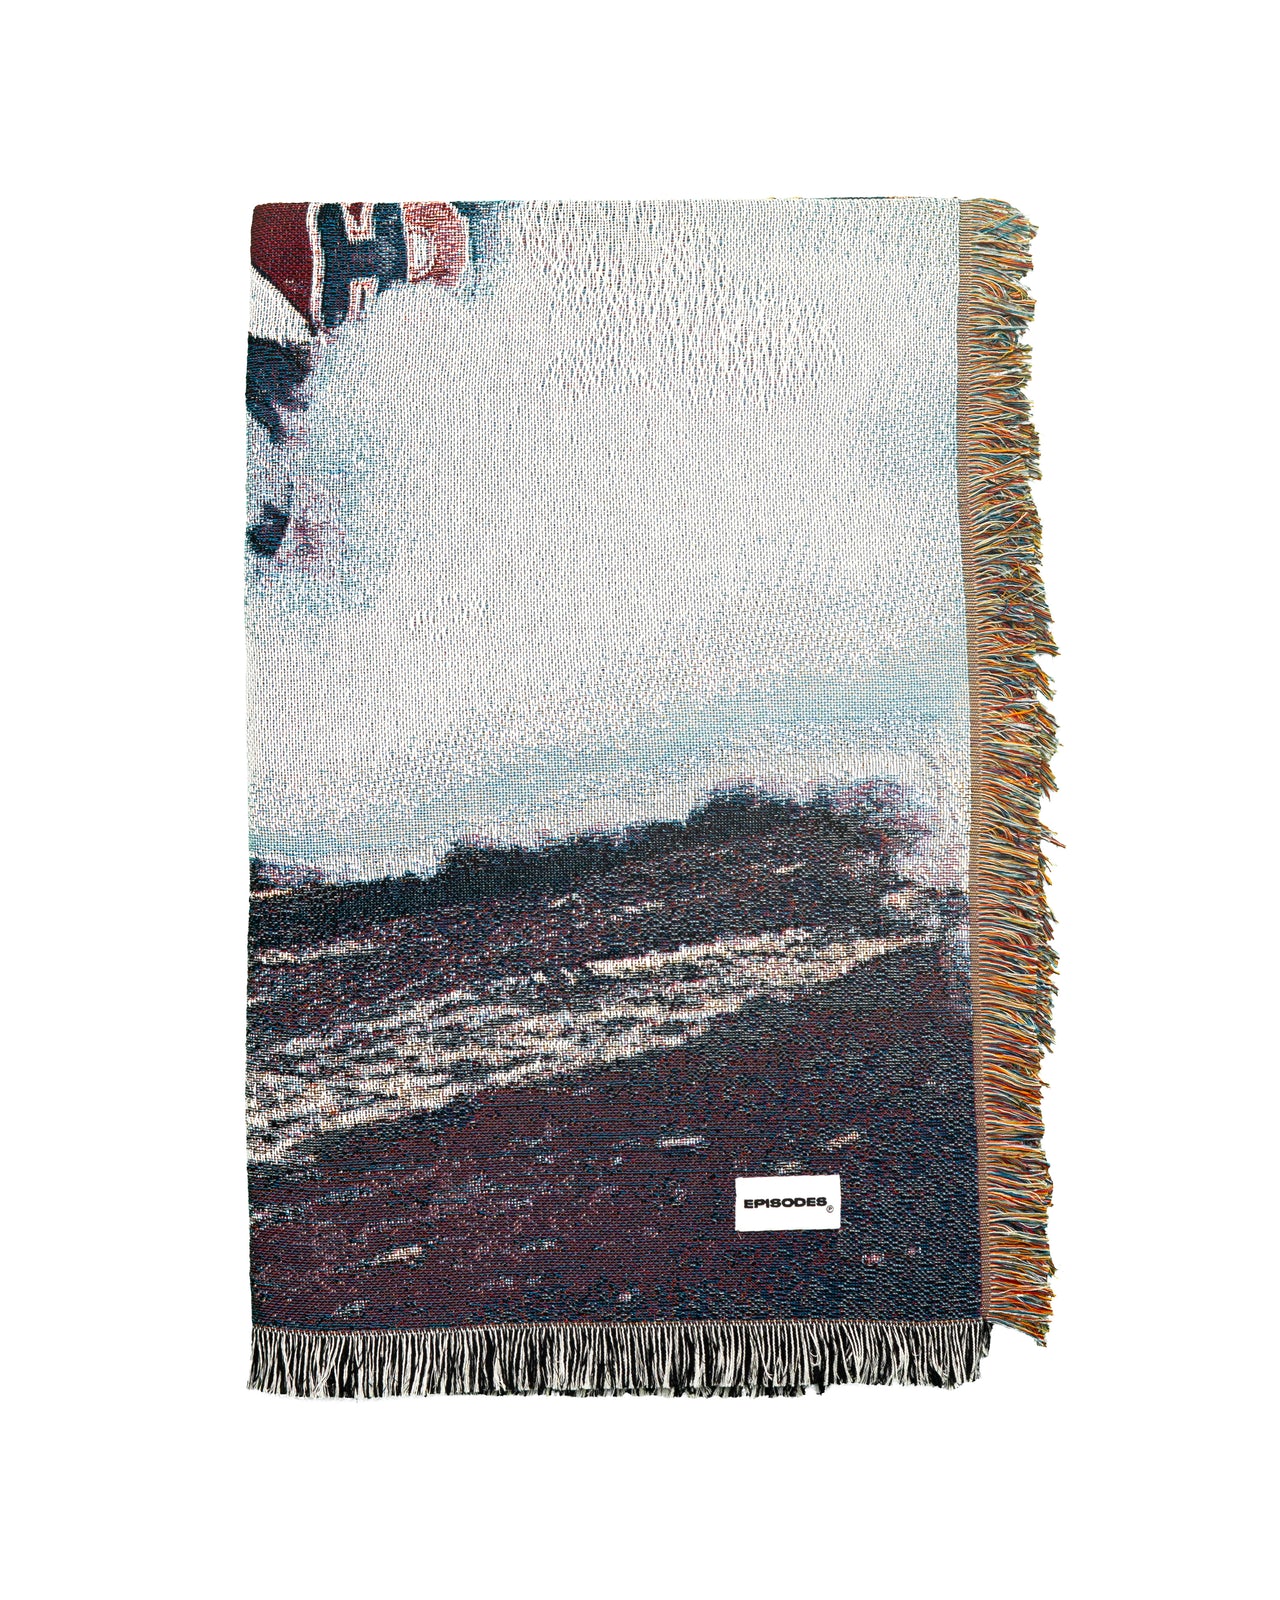 'DRIFT' Tapestry Blanket